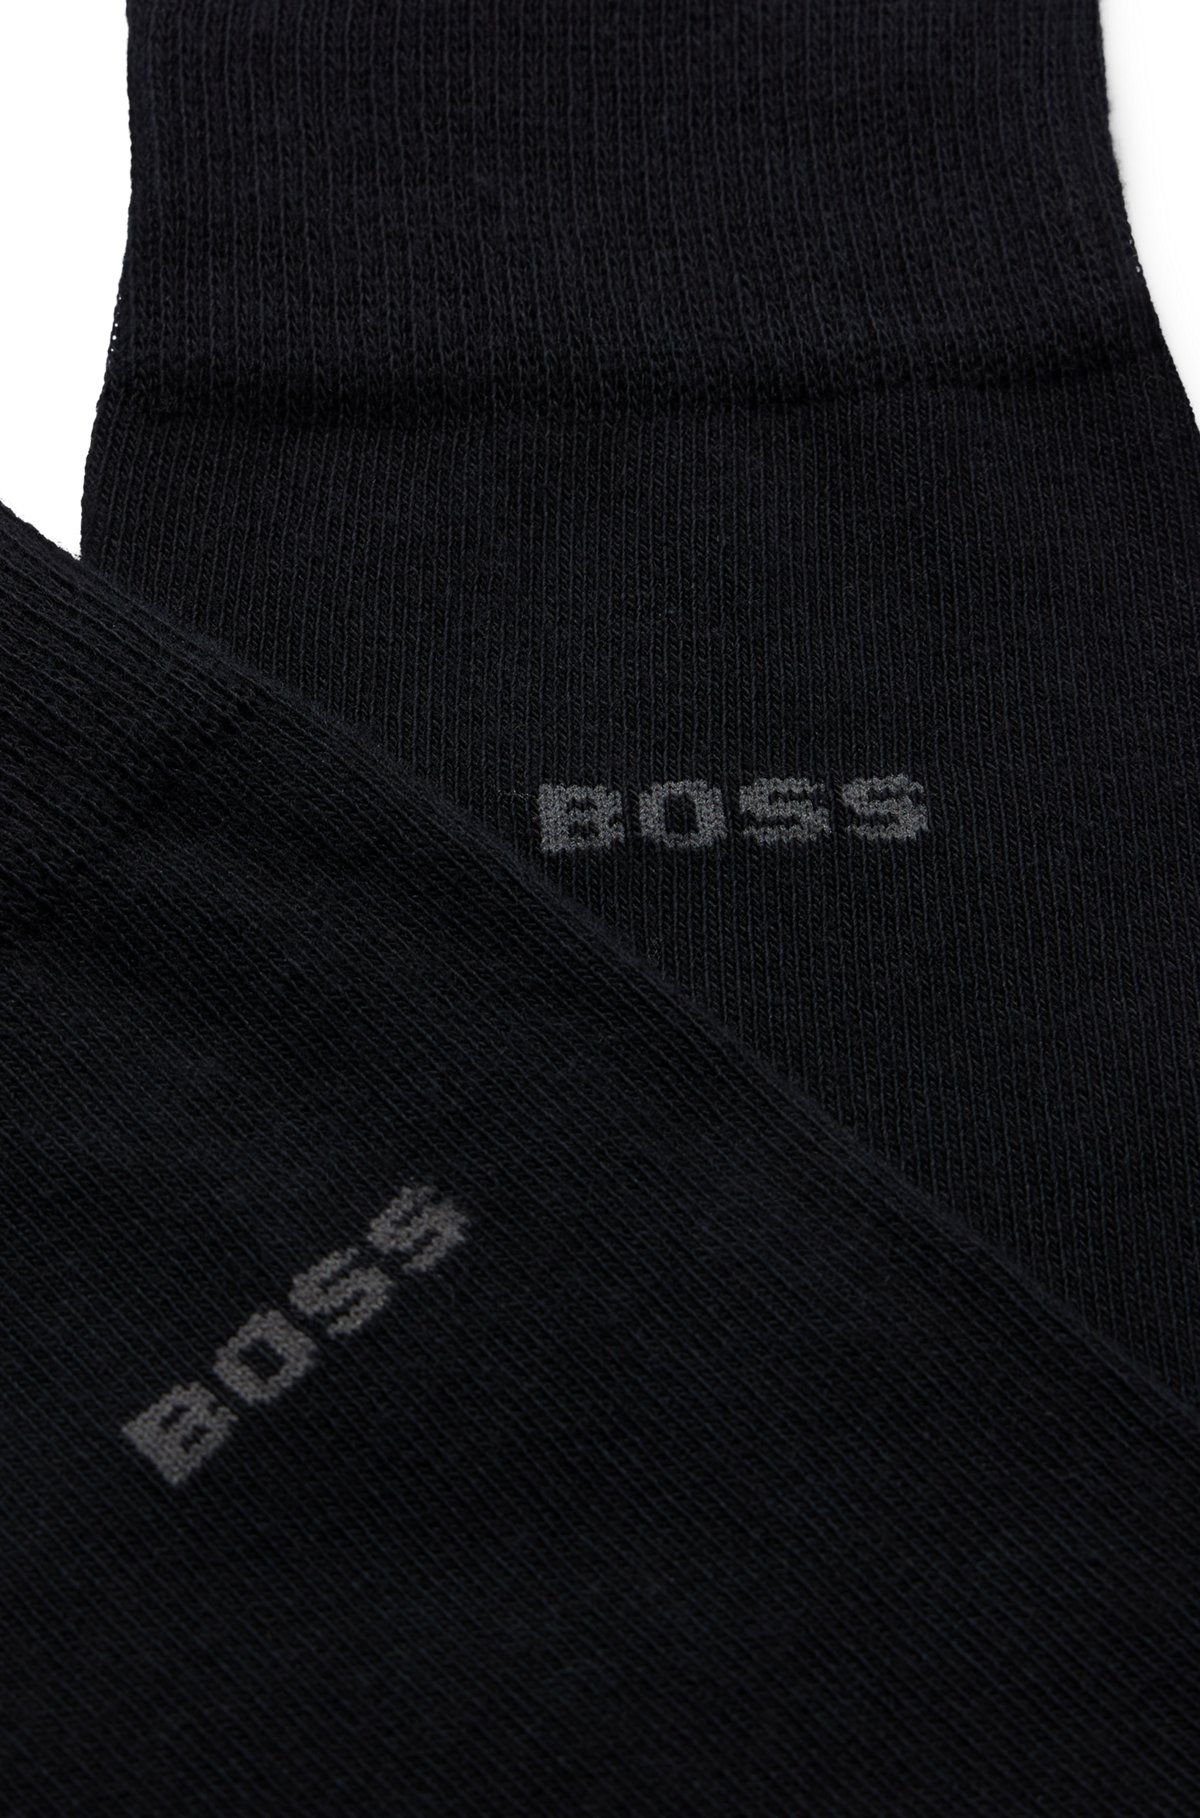 Paquete de dos pares de calcetines de largo estándar en tejido elástico, Negro